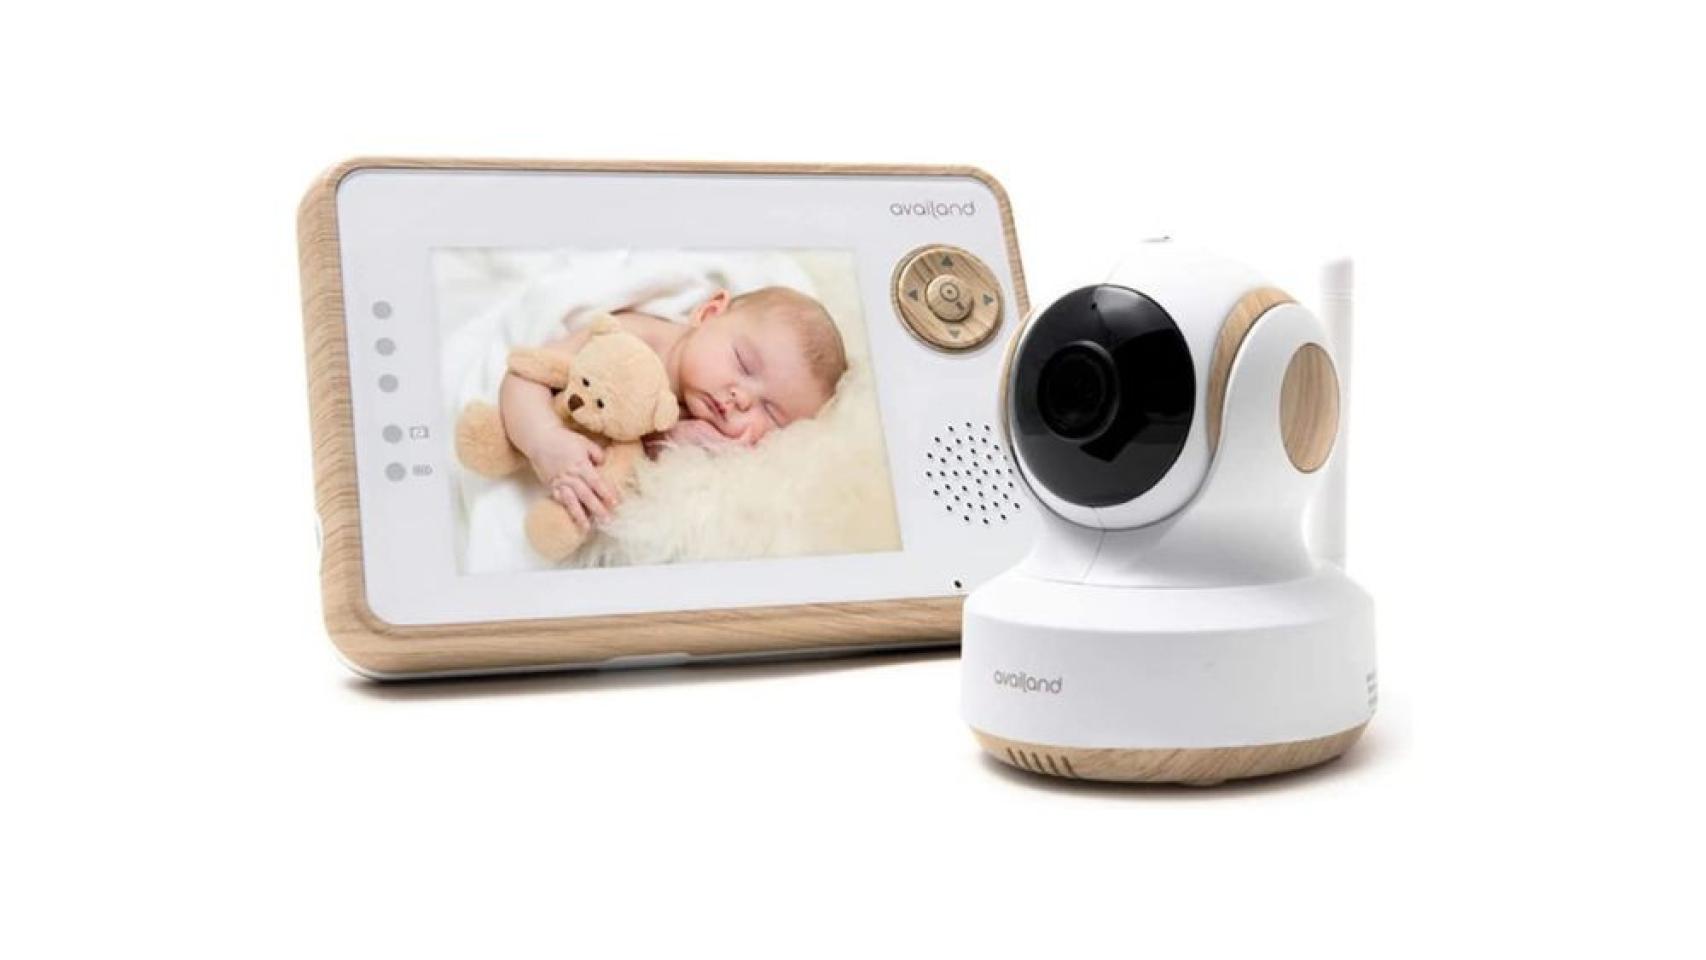 Los mejores monitores de bebés con cámara (vigilabebés) en 2022